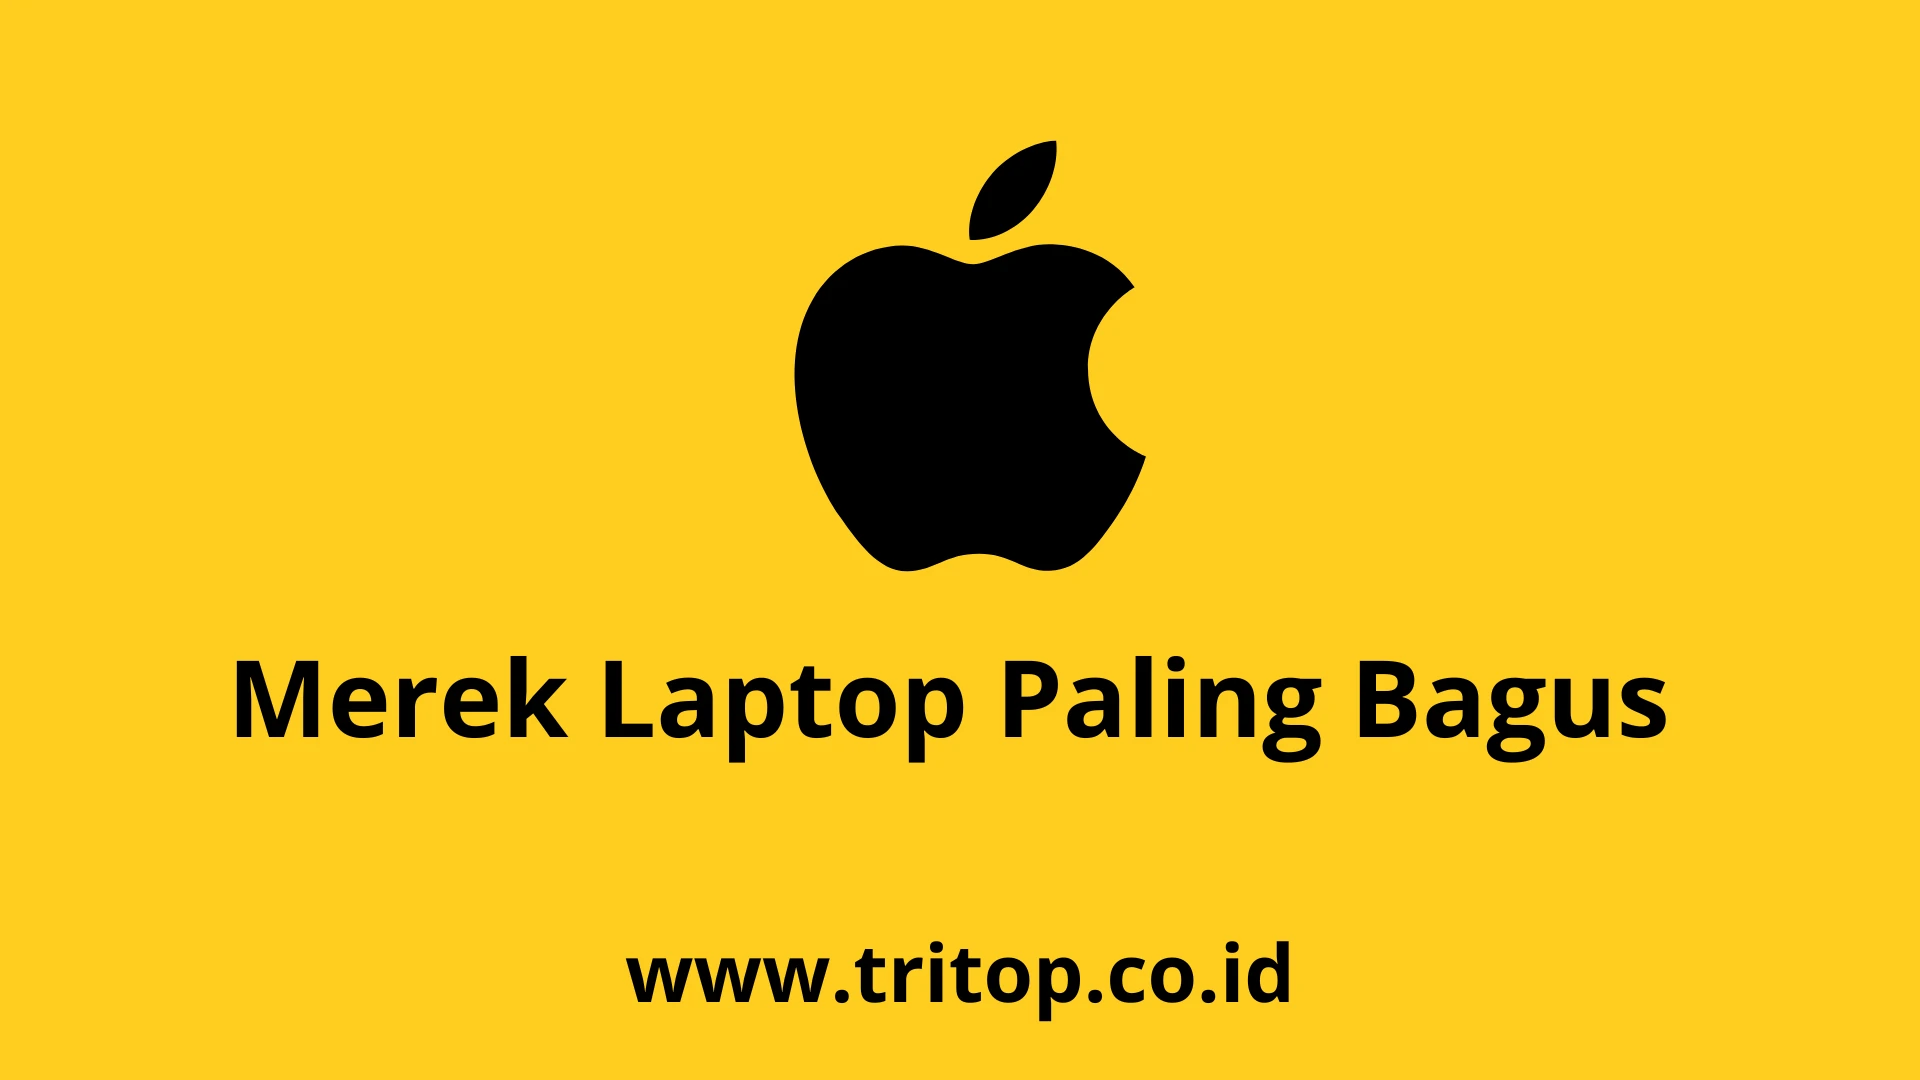 Merek Laptop Paling Bagus Tritop.co.id~1